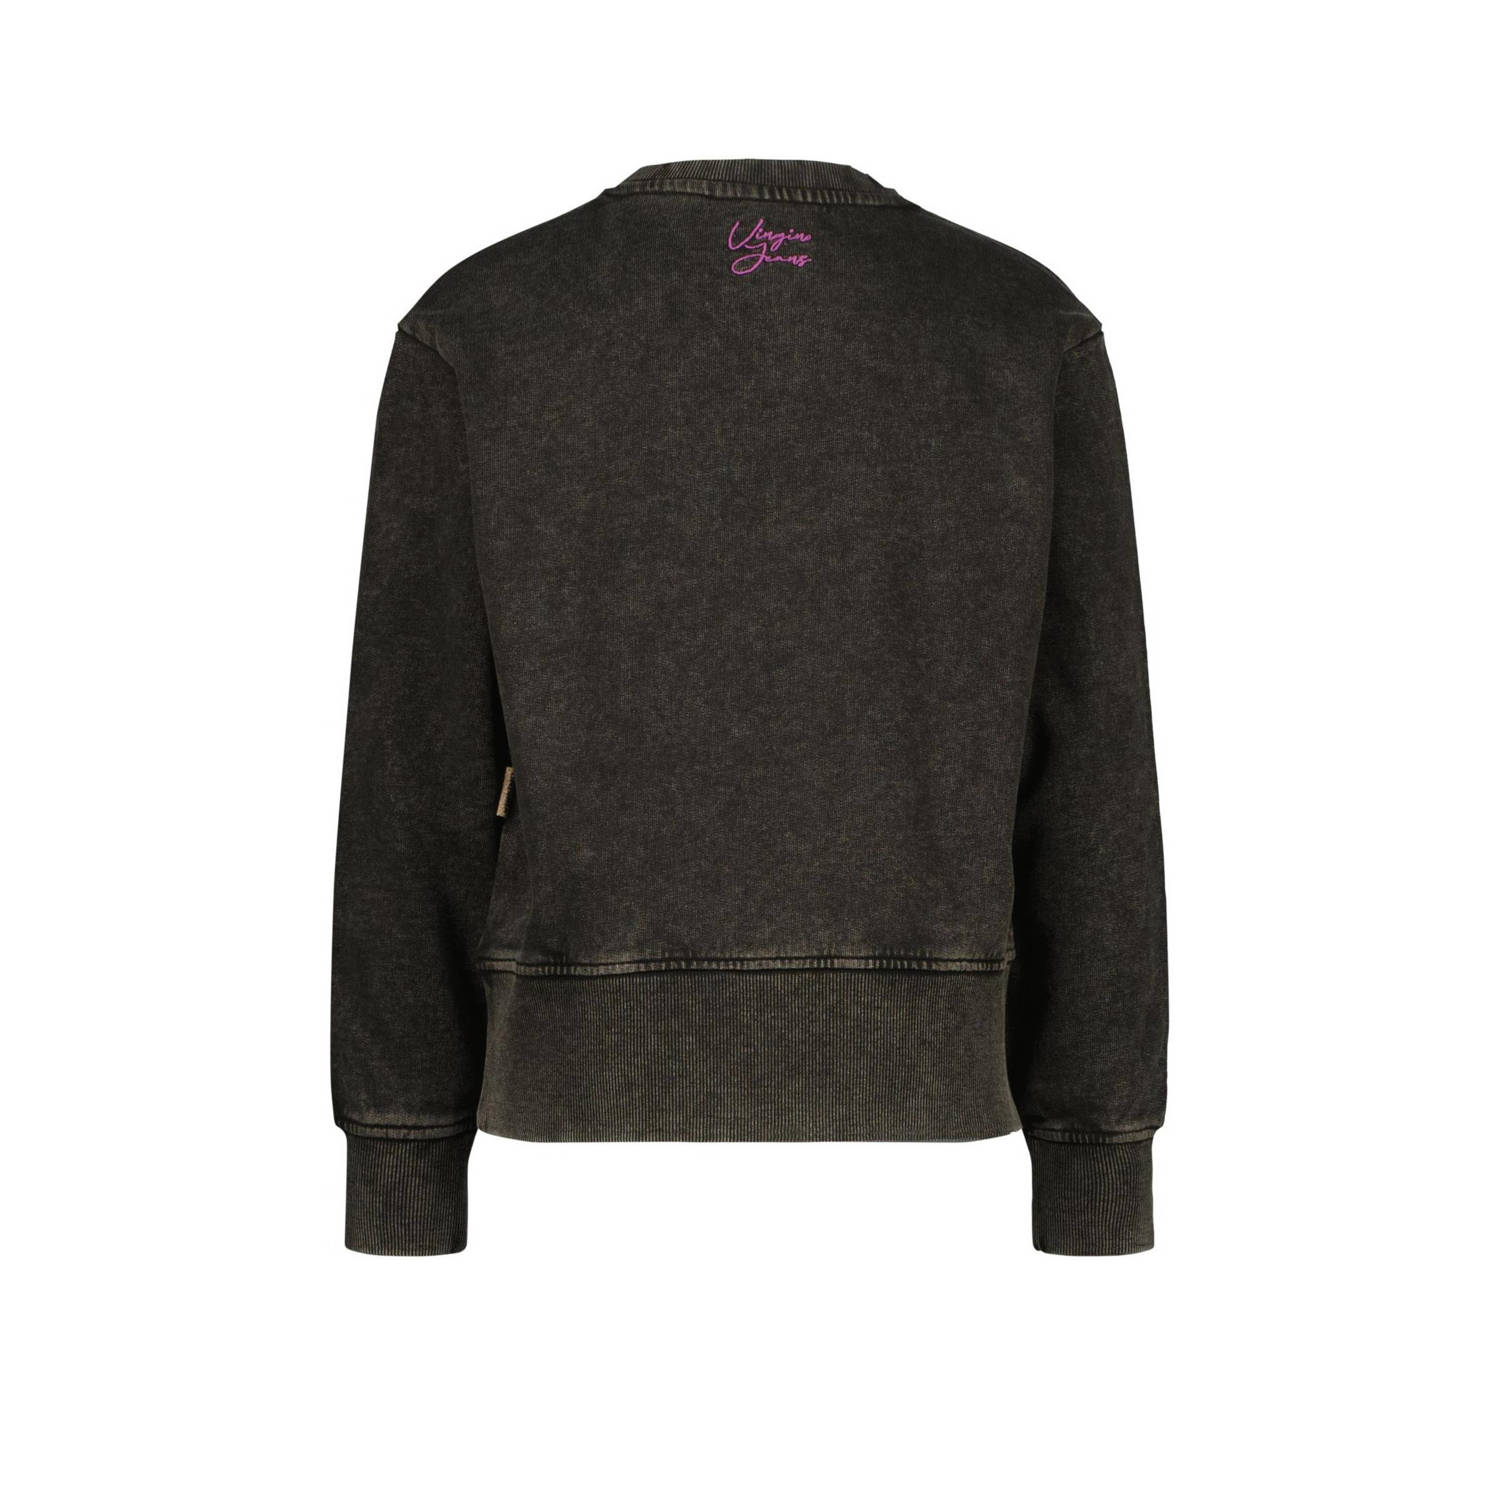 Vingino sweater Narou met tekst vergrijsd zwart